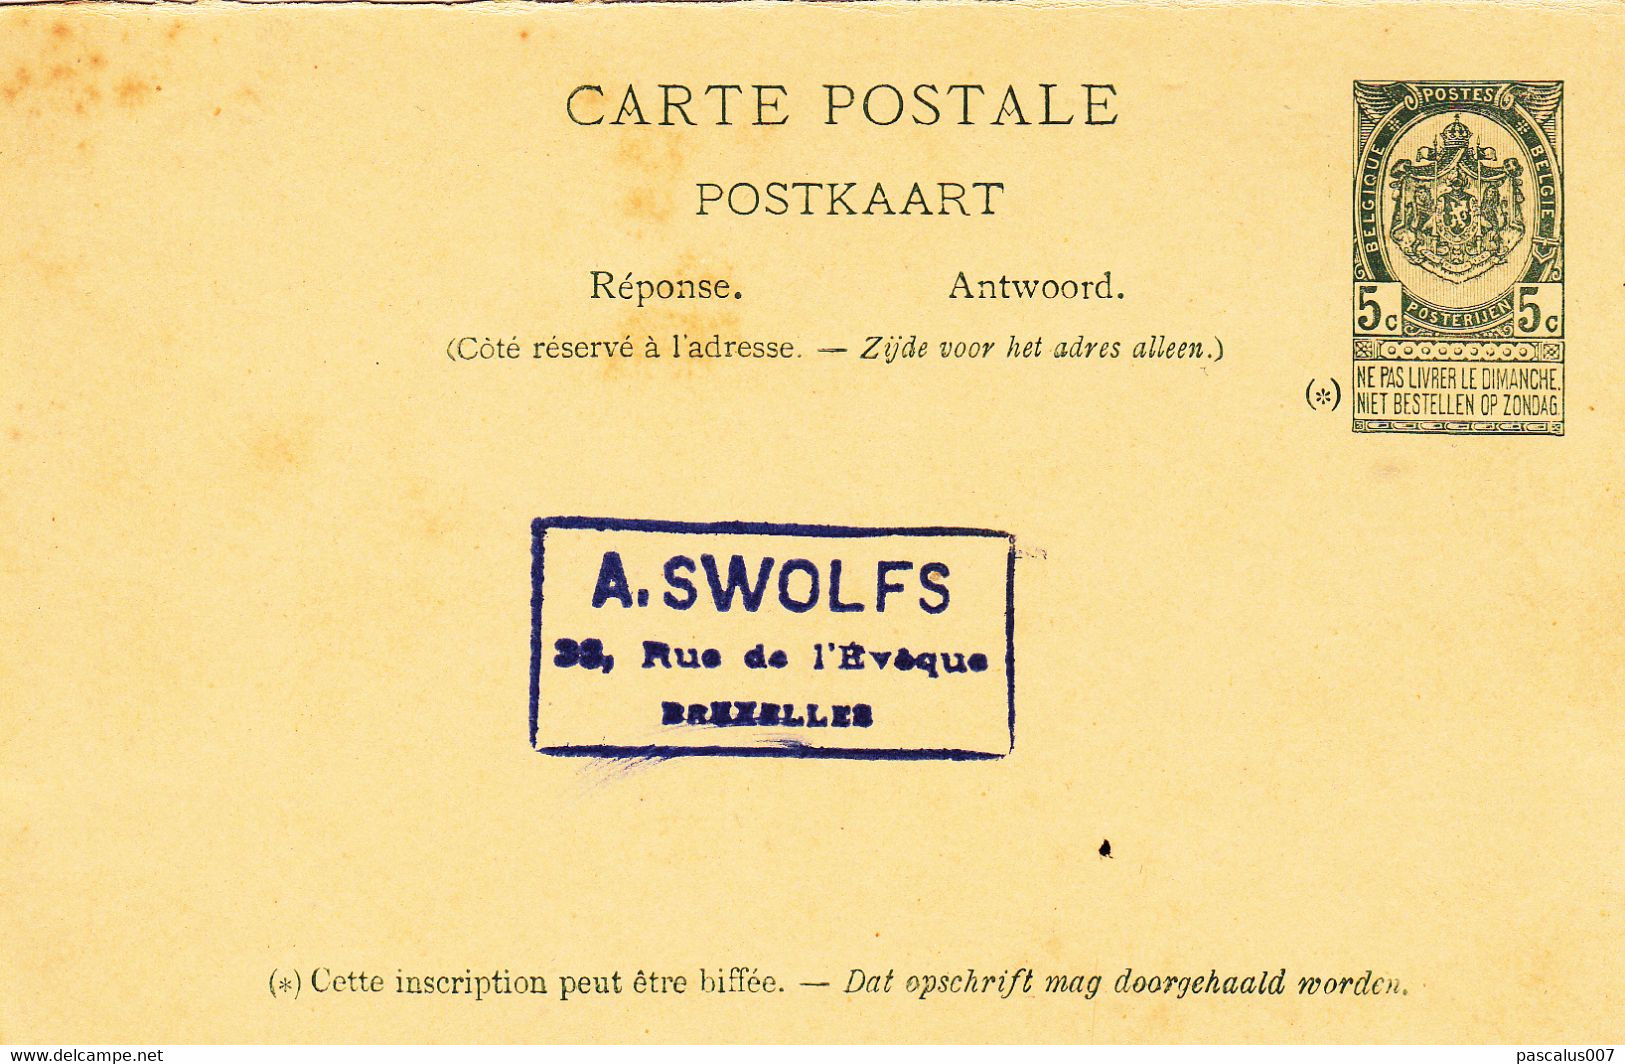 B01-198 AP - entier postal - 6 cartes postales  Neuves 1 Carte Réponse Usagée 10€